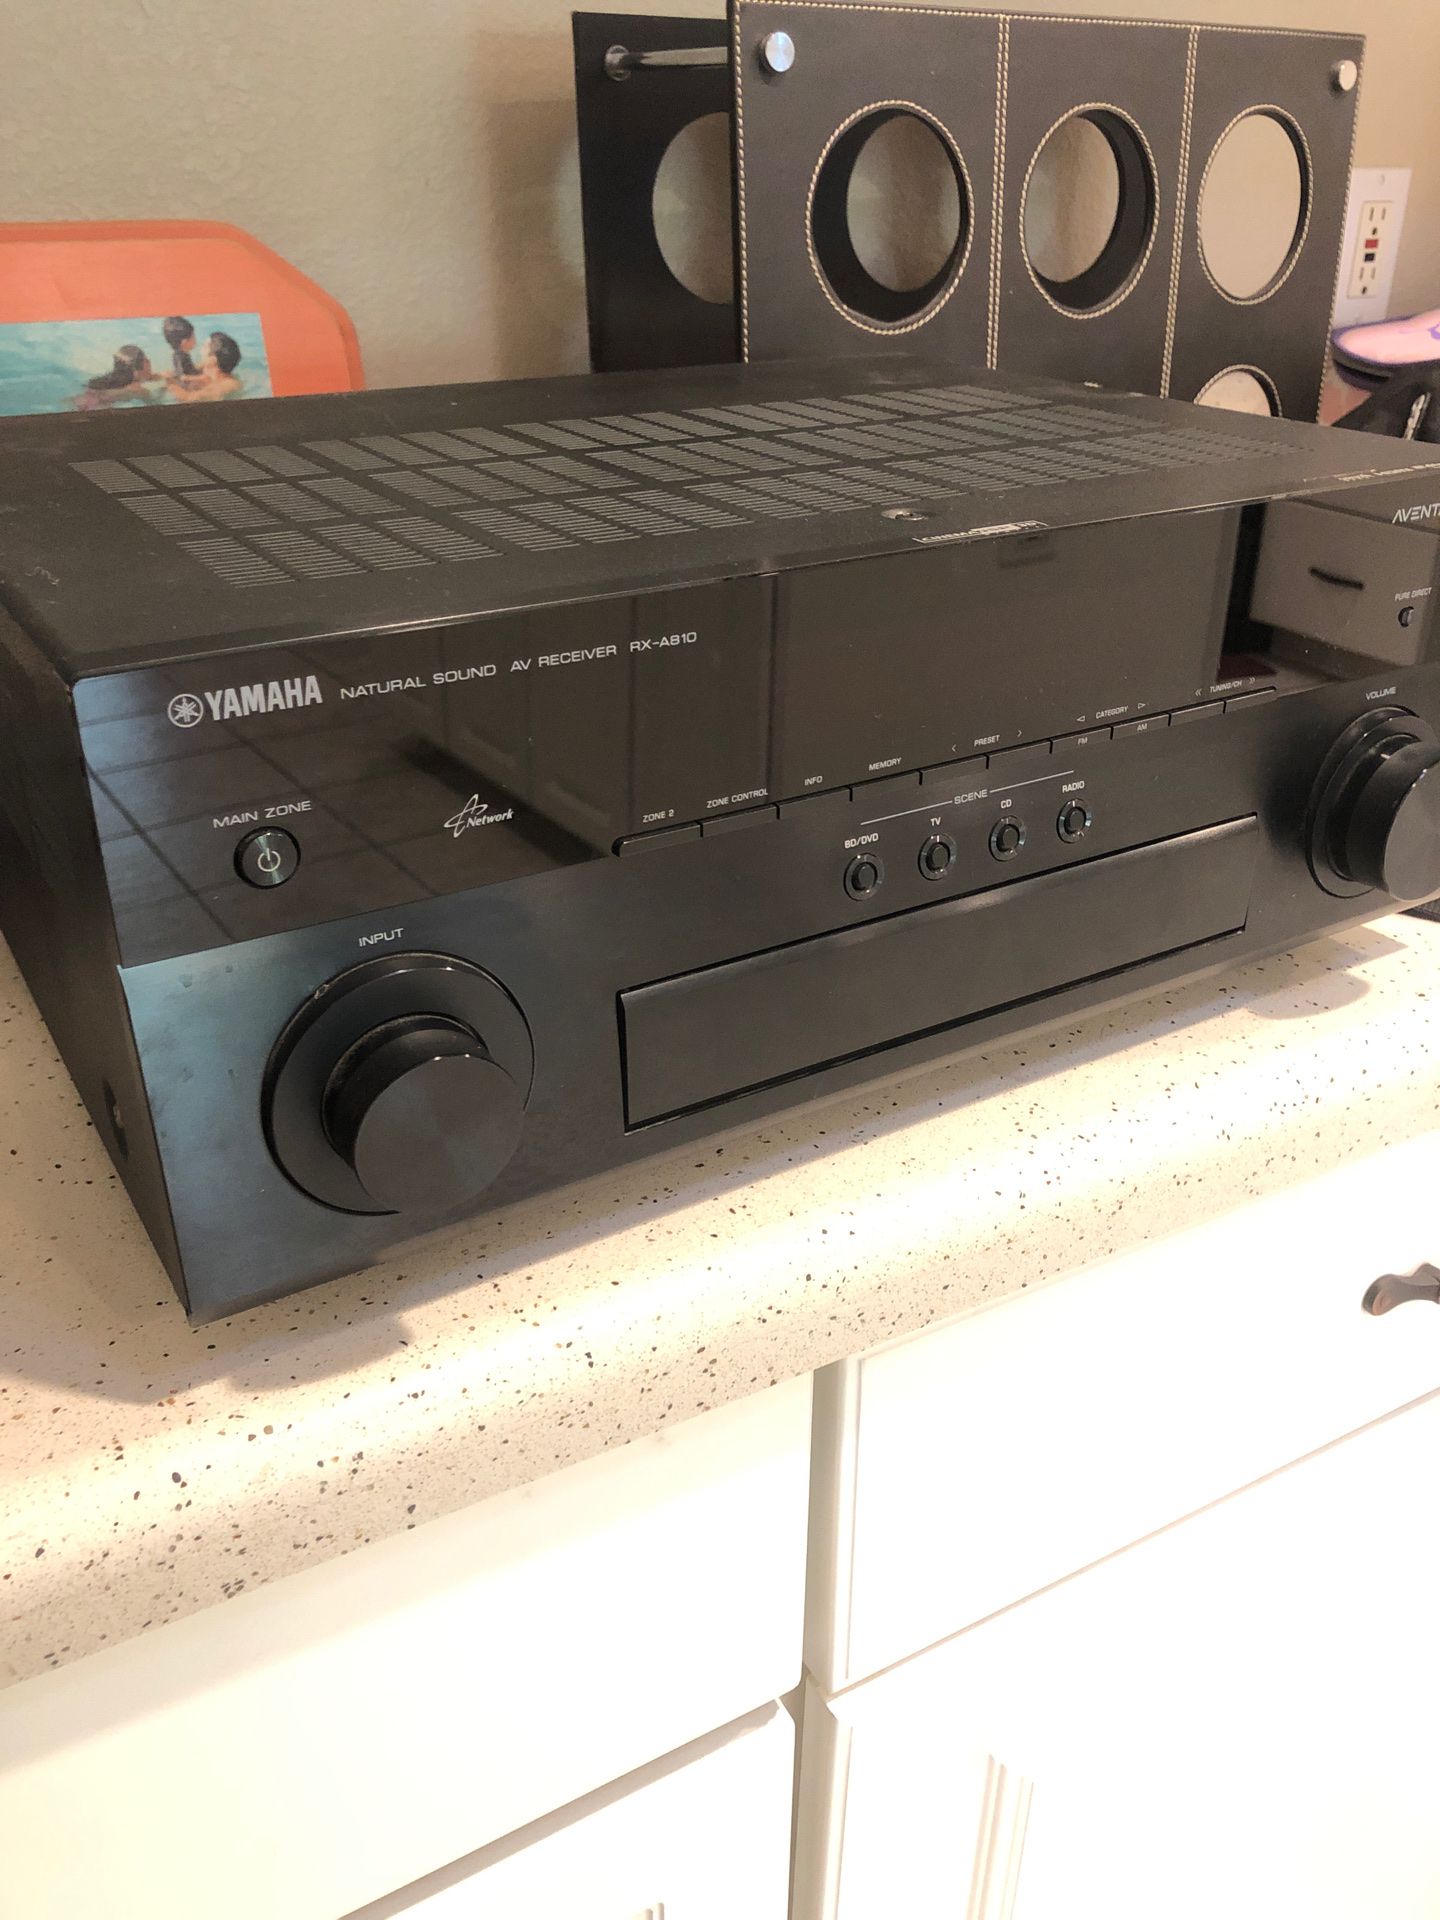 Yamaha AV receiver RX-A810